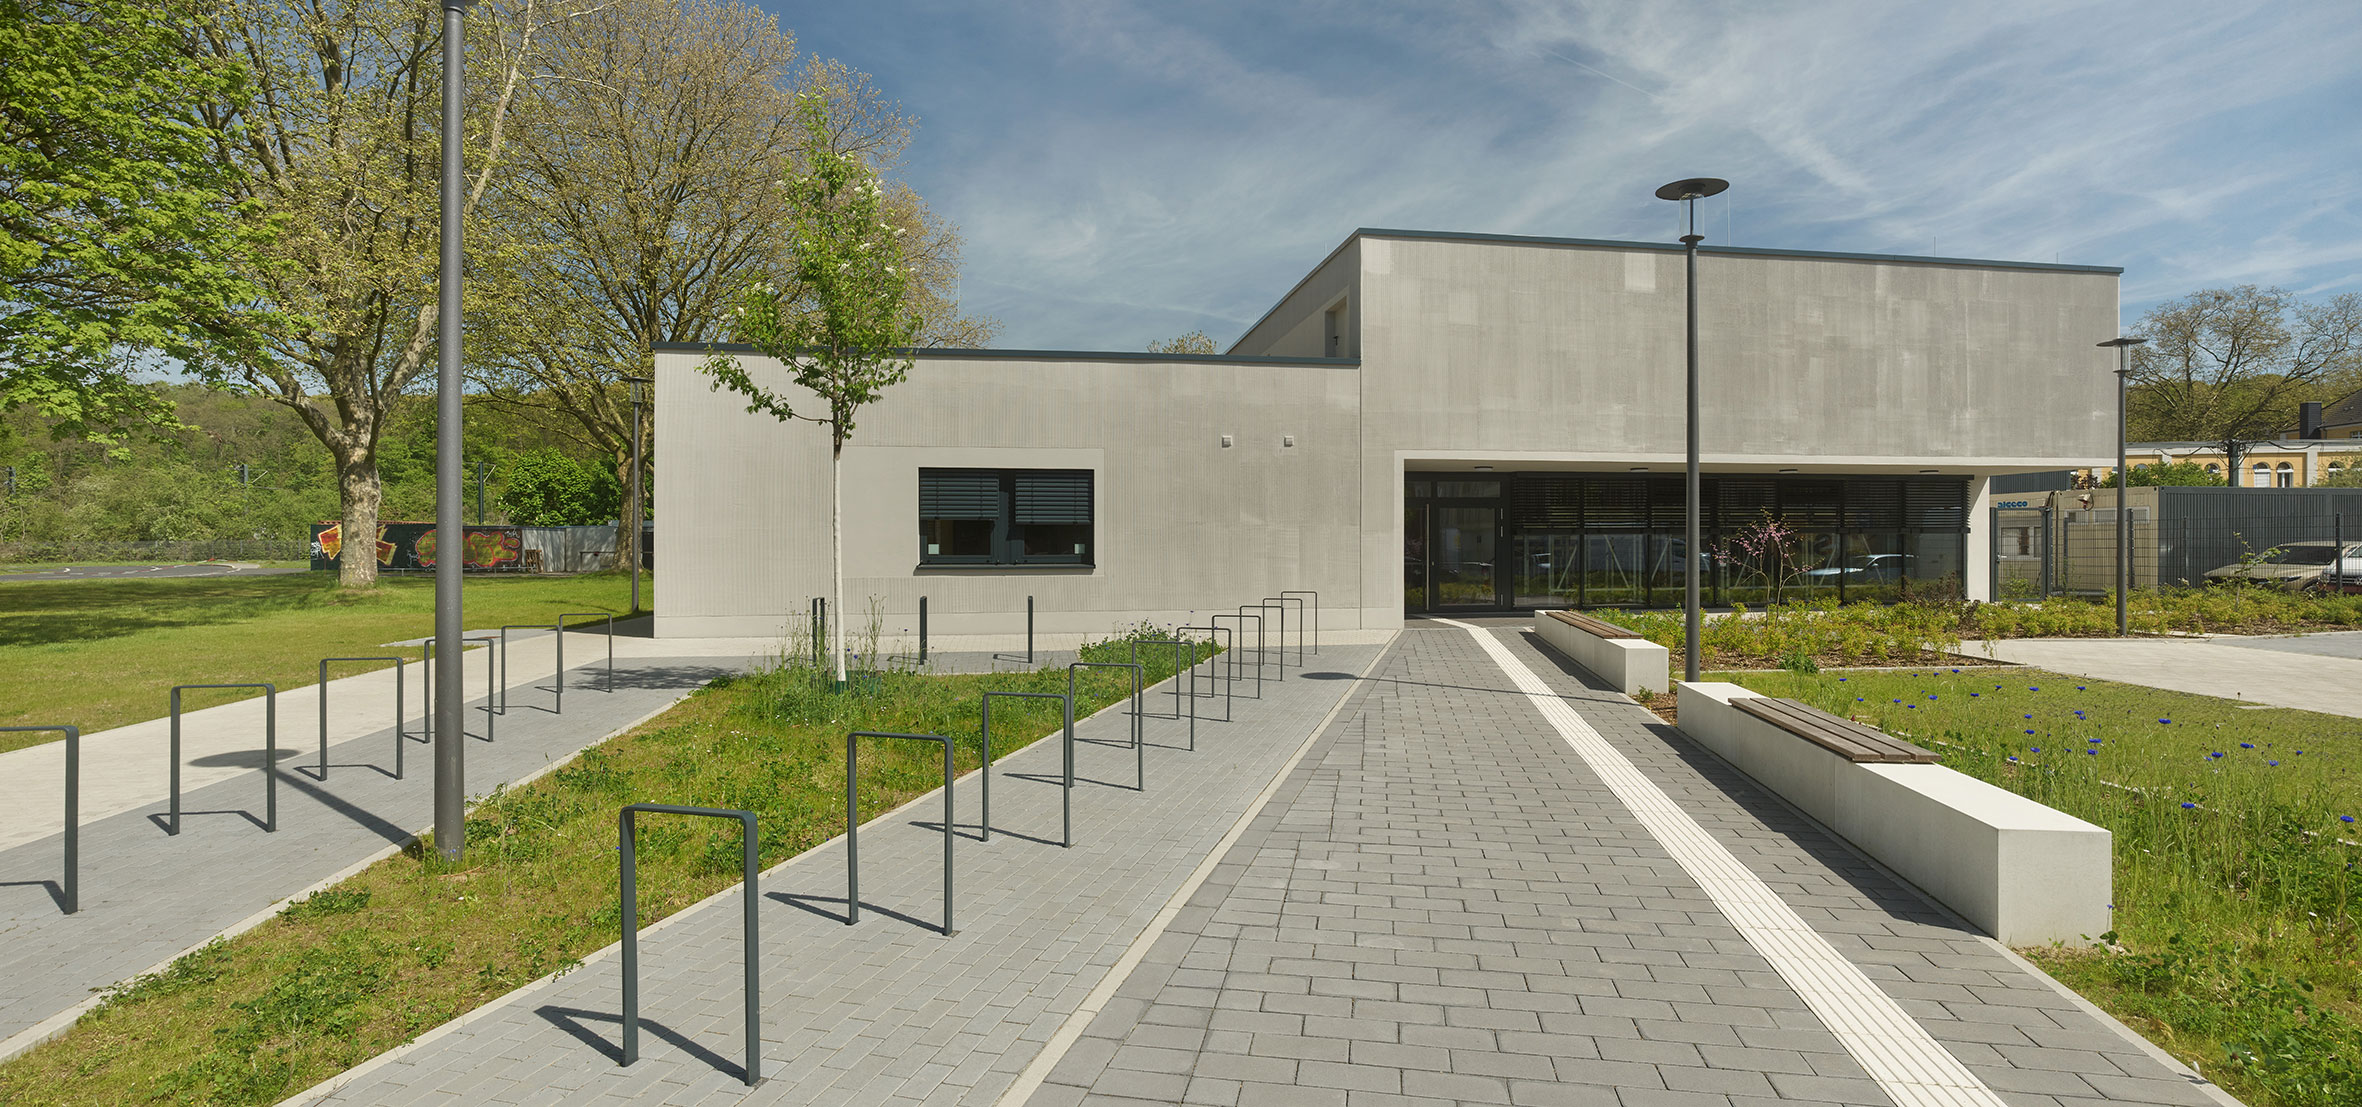 Der von bap architekten entworfene Neubau der Jugendverkehrsschule Düsseldorf vereint repräsentative Architektur mit Nachhaltigkeit und Funktionalität.